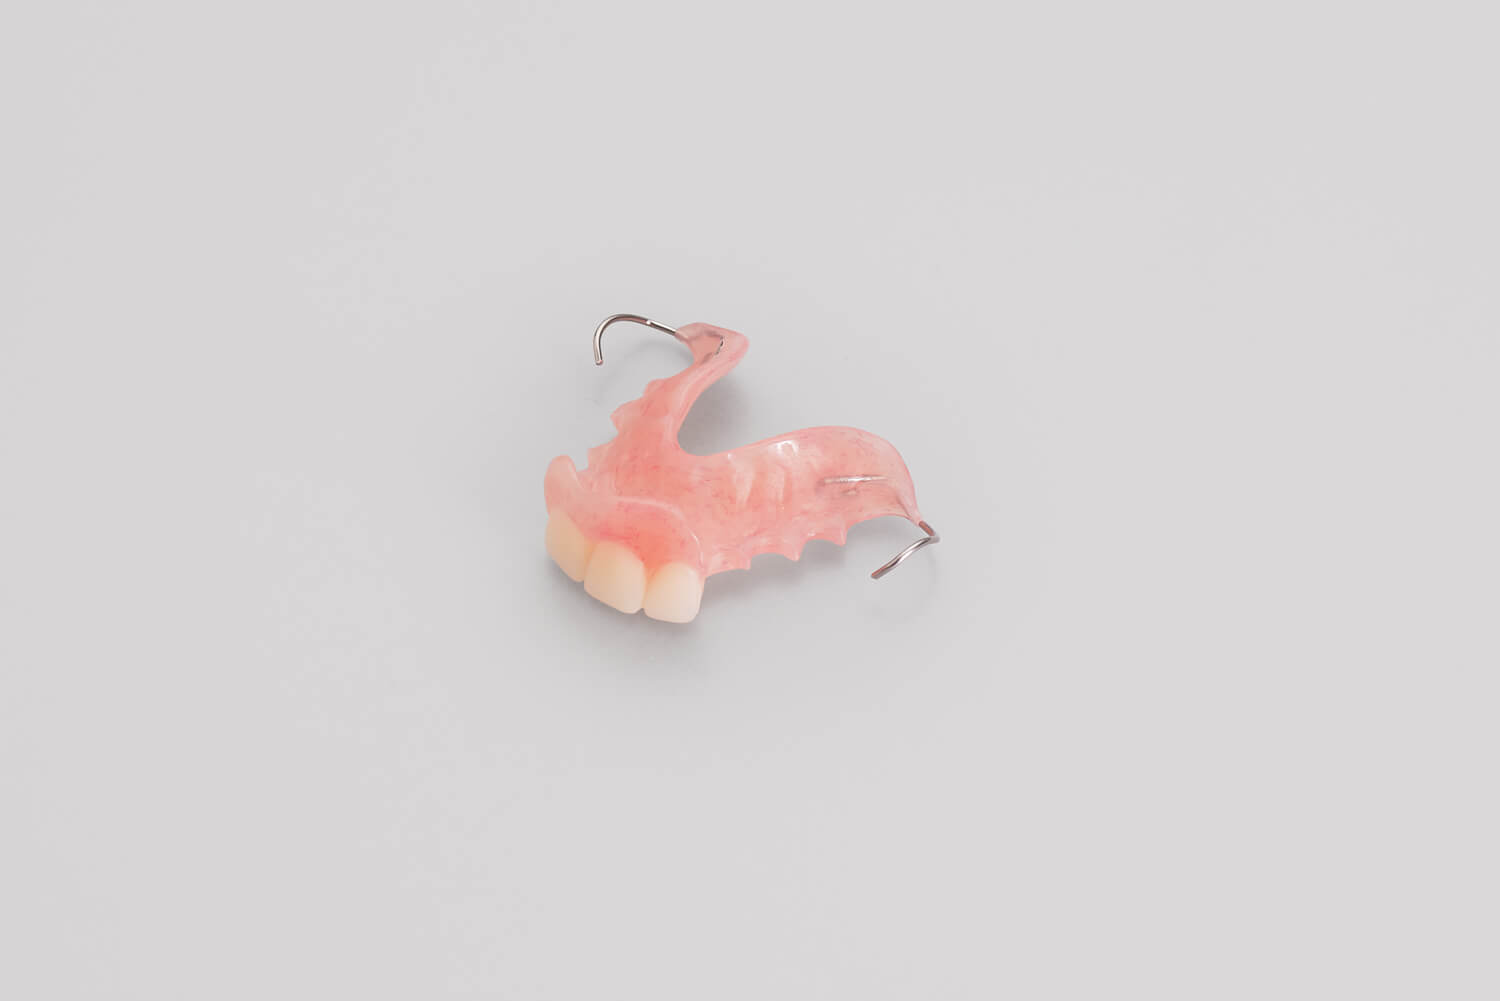 Acrylic partial dentures